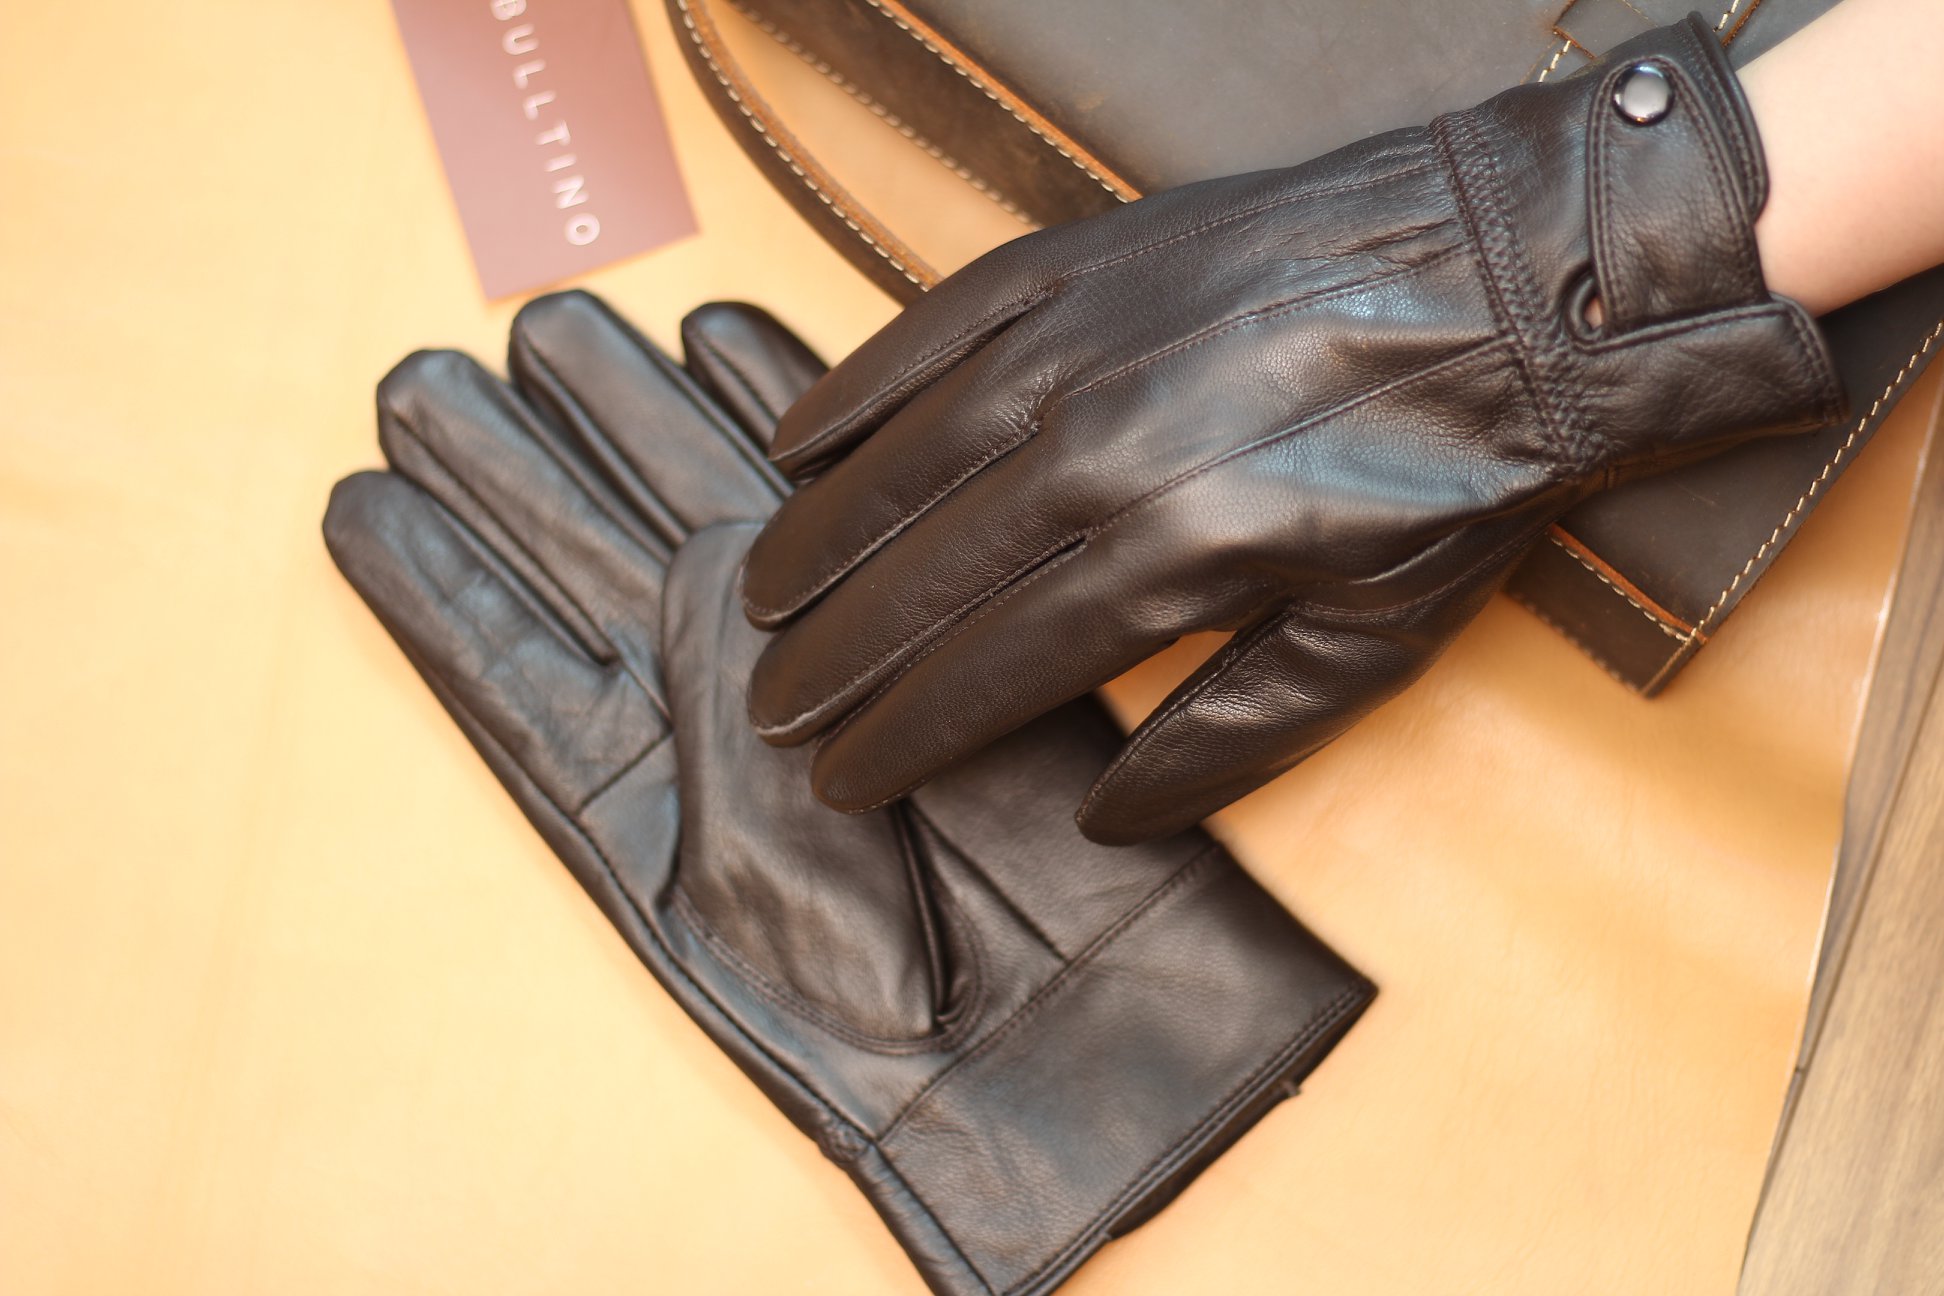 Găng tay da thật được khâu chỉ chắc chắn, chất liệu mềm mại ôm theo form tay người sử dụng